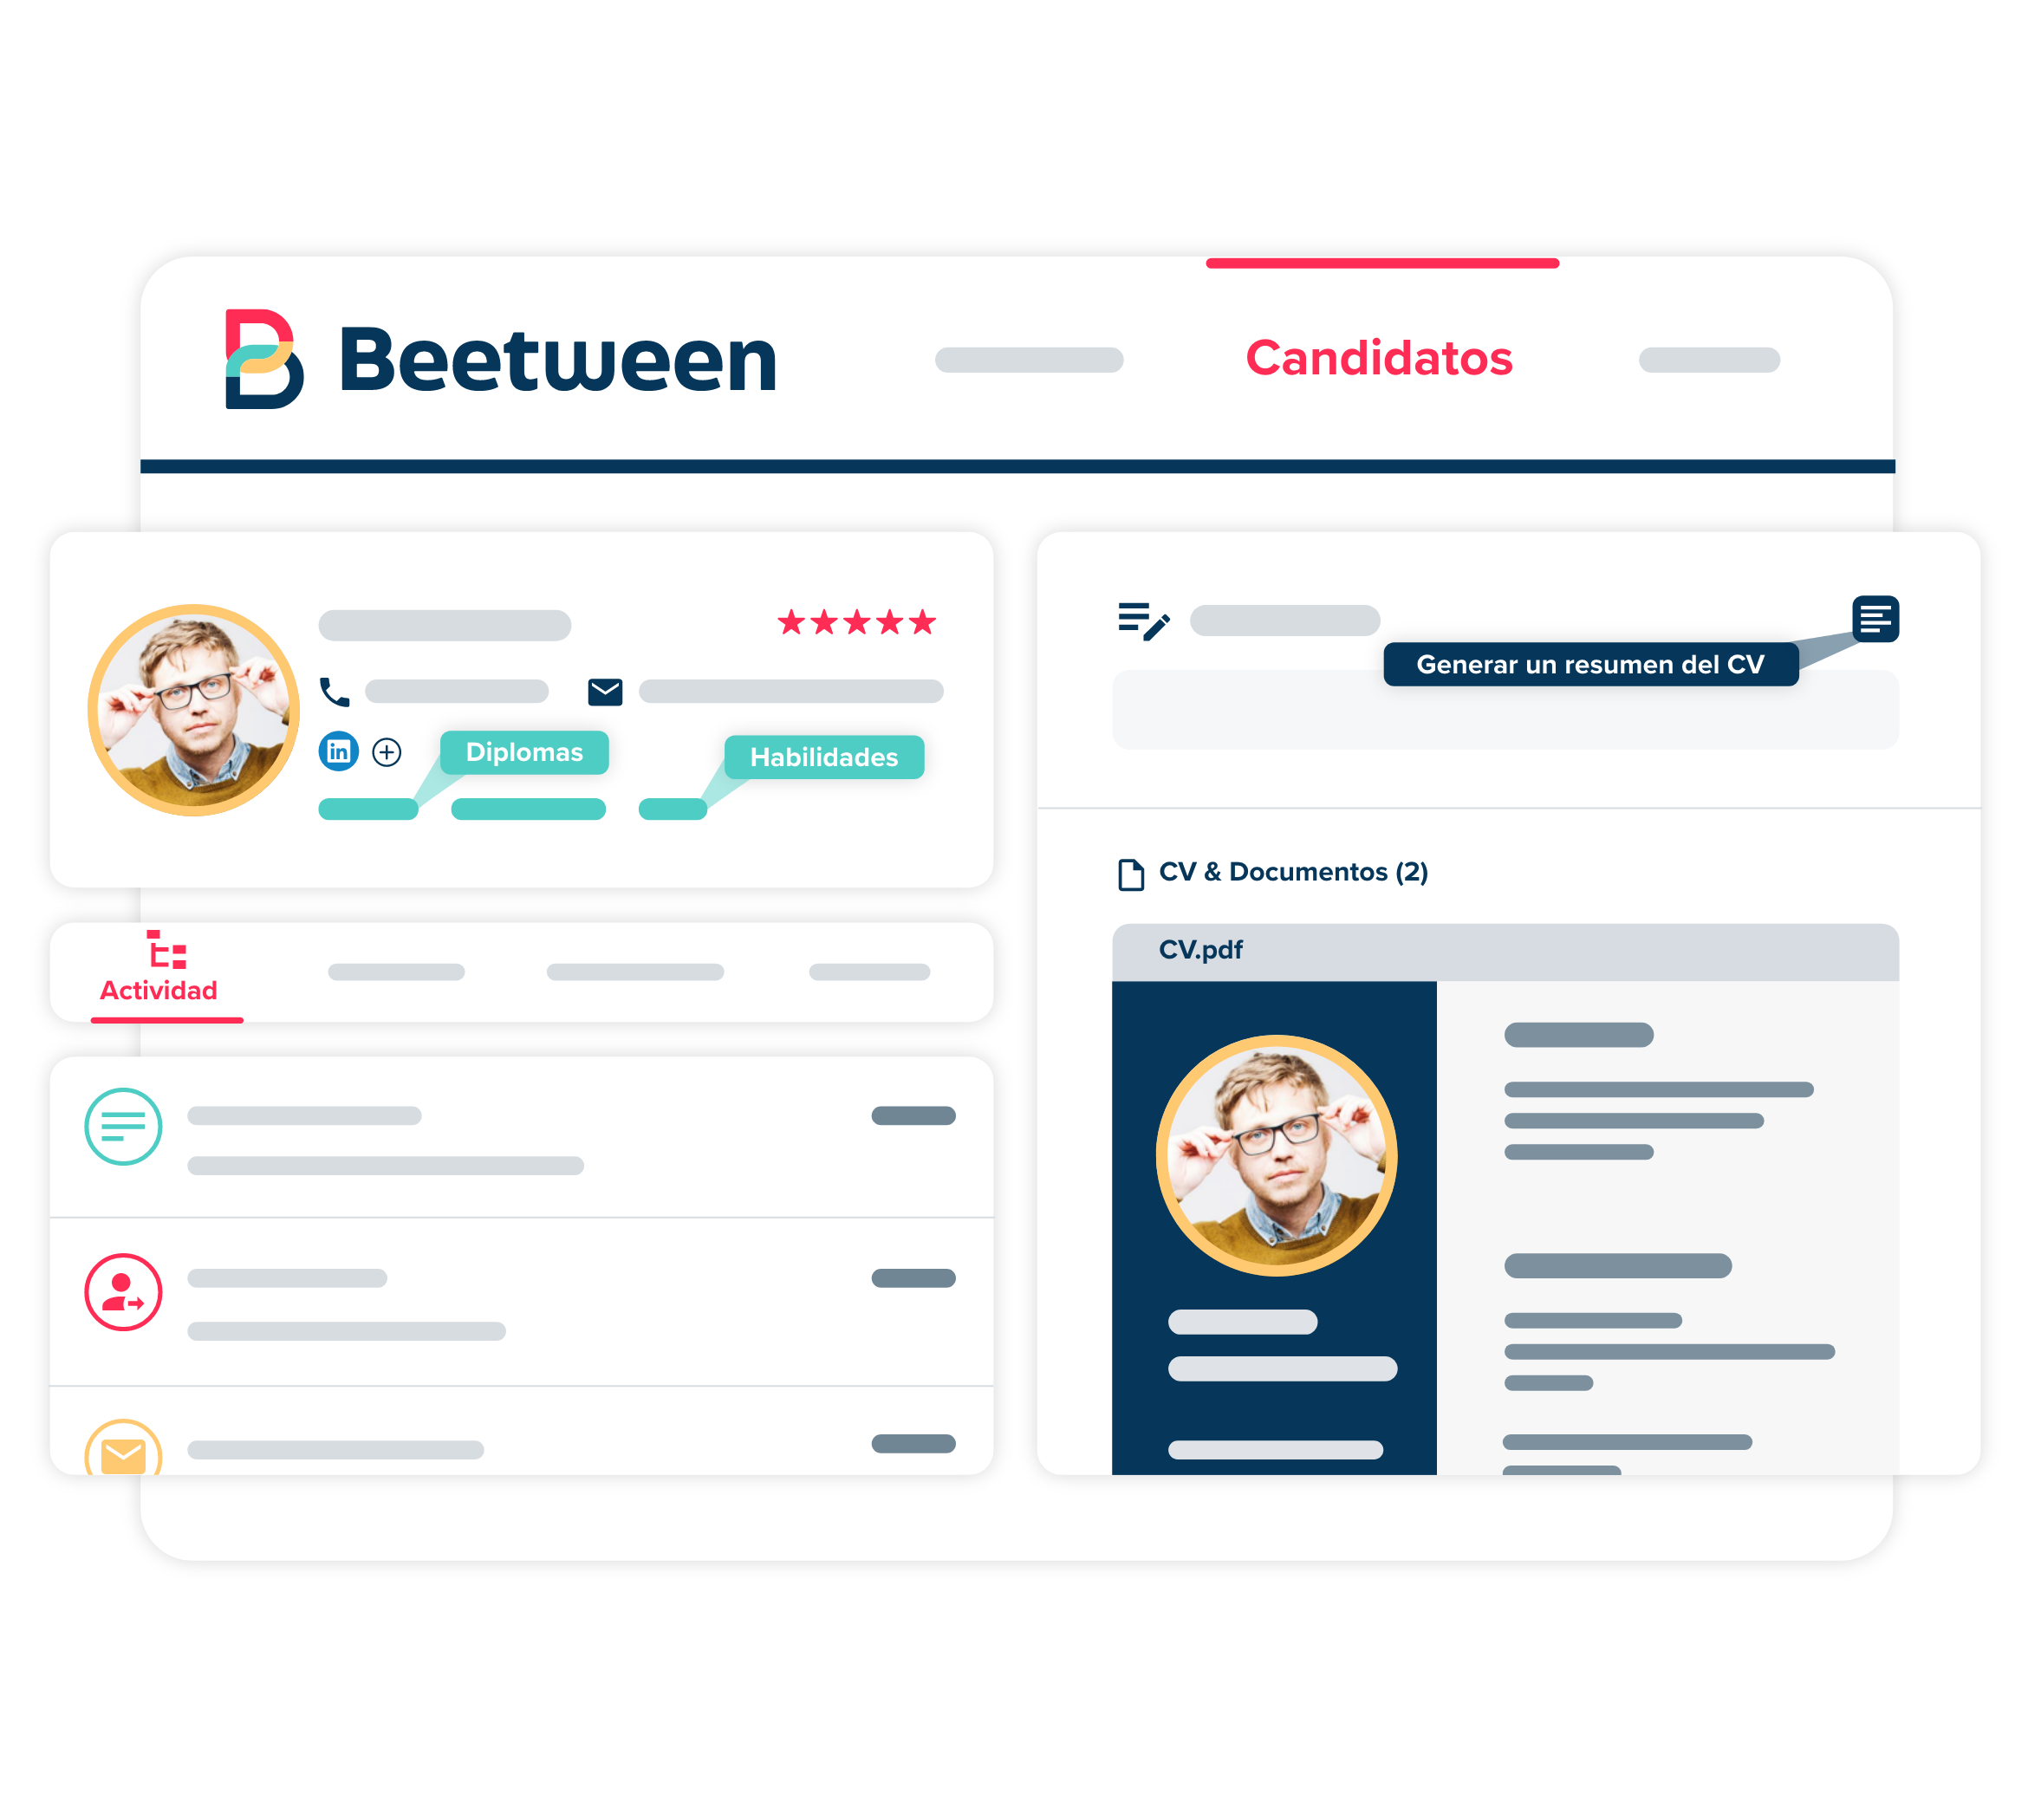 Beetween - Ficha de candidato con etiquetas automaticas resumen generado con IA, y generación de informes